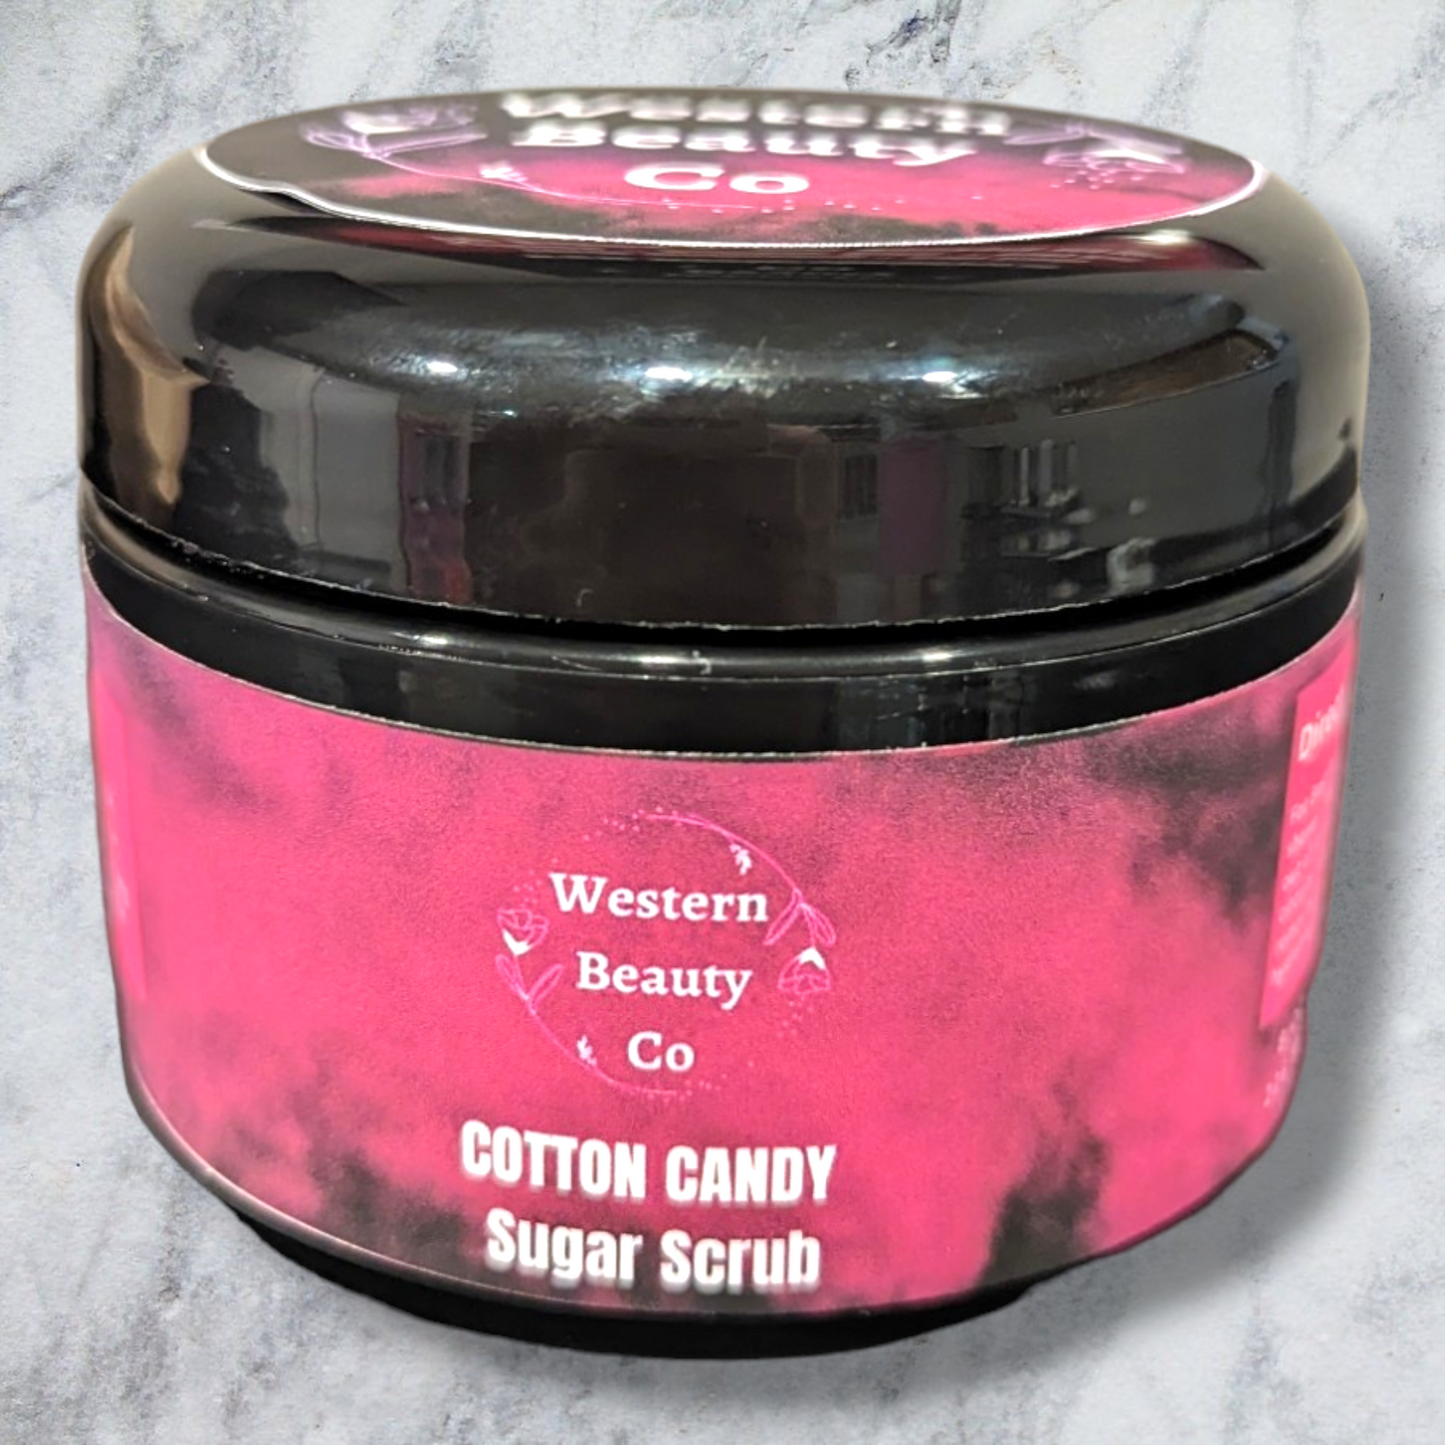 Cotton Candy Sugar Scrub